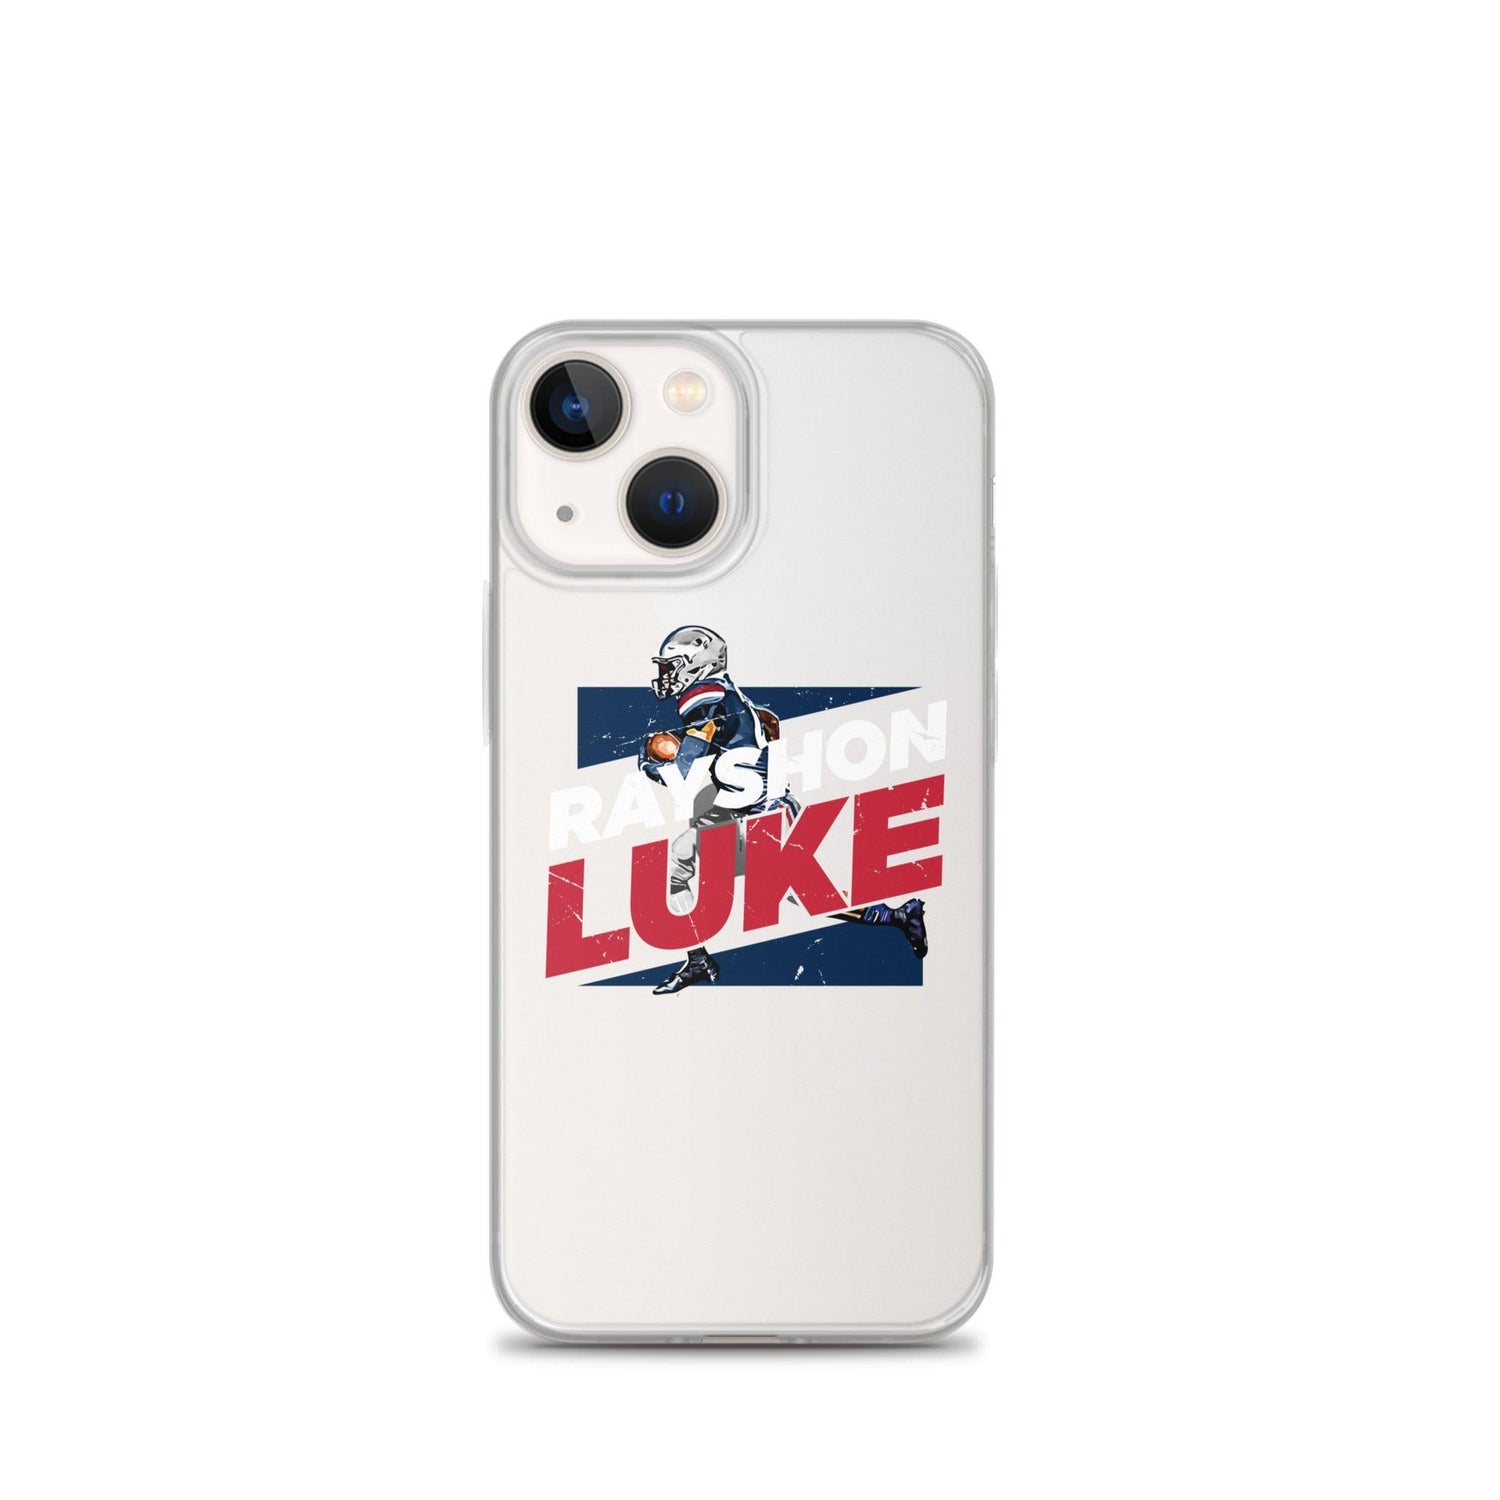 Rayshon Luke "Gametime" iPhone Case - Fan Arch